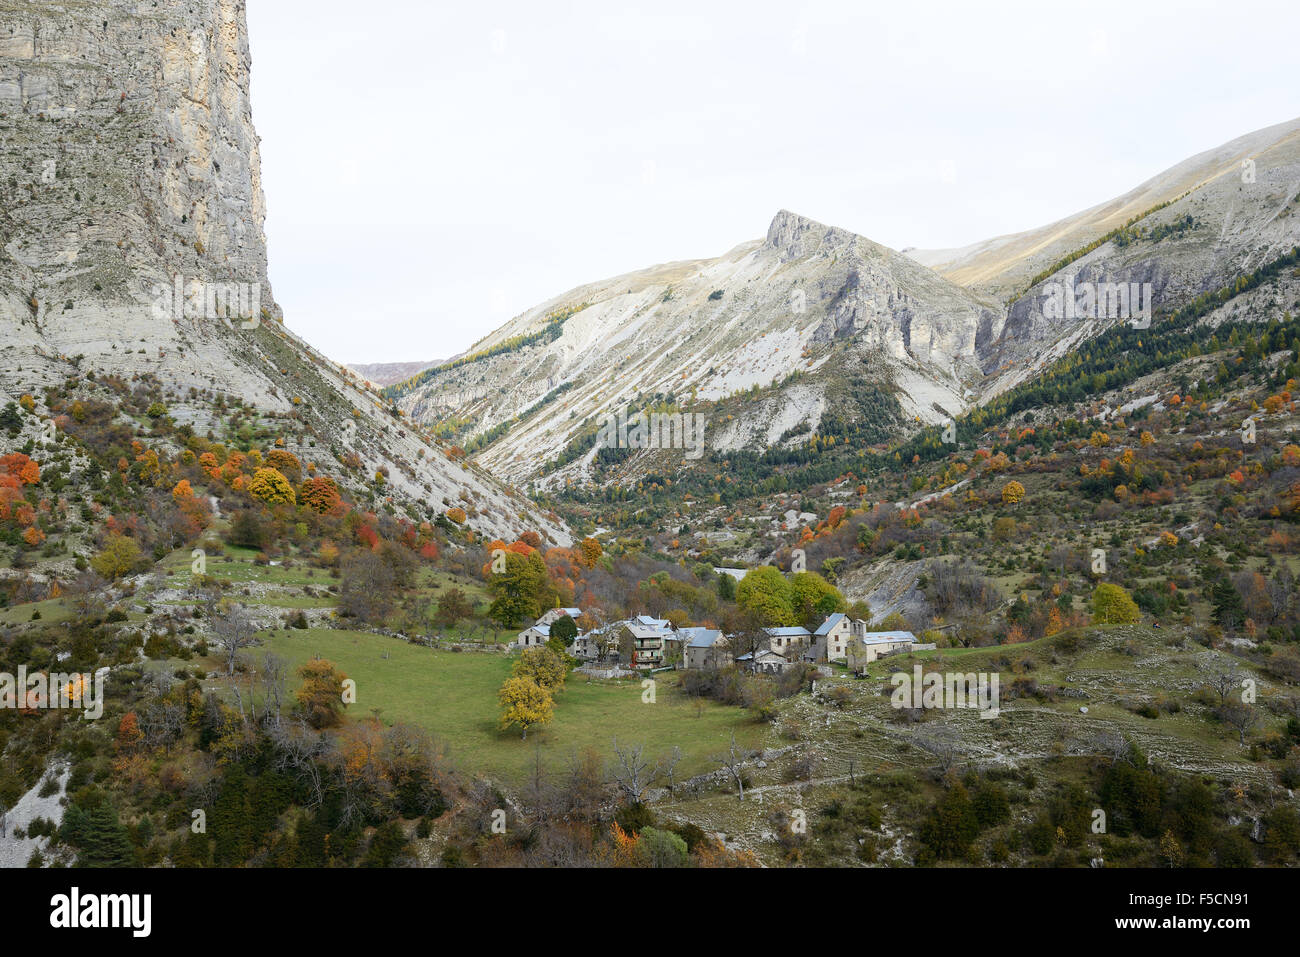 Aldea abandonada en un remoto valle alpino a los pies de un enorme acantilado. Aurent, Valle de Coulomp, Alpes de Alta Provenza, Francia. Foto de stock